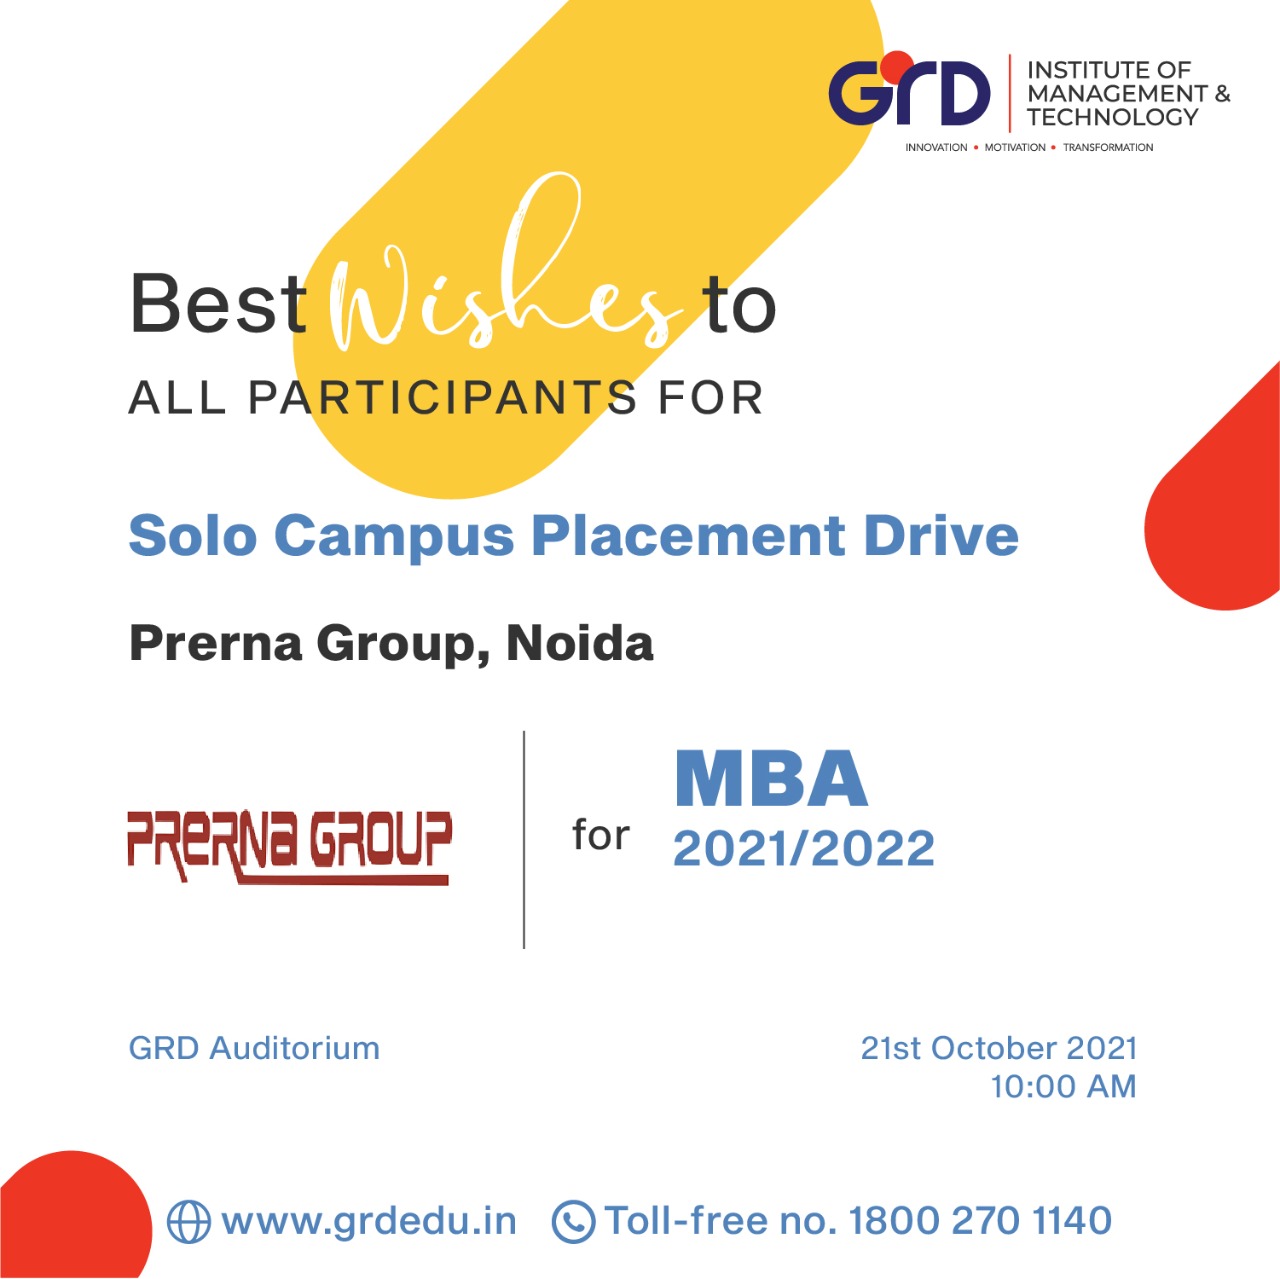 Prerna Group, Noida